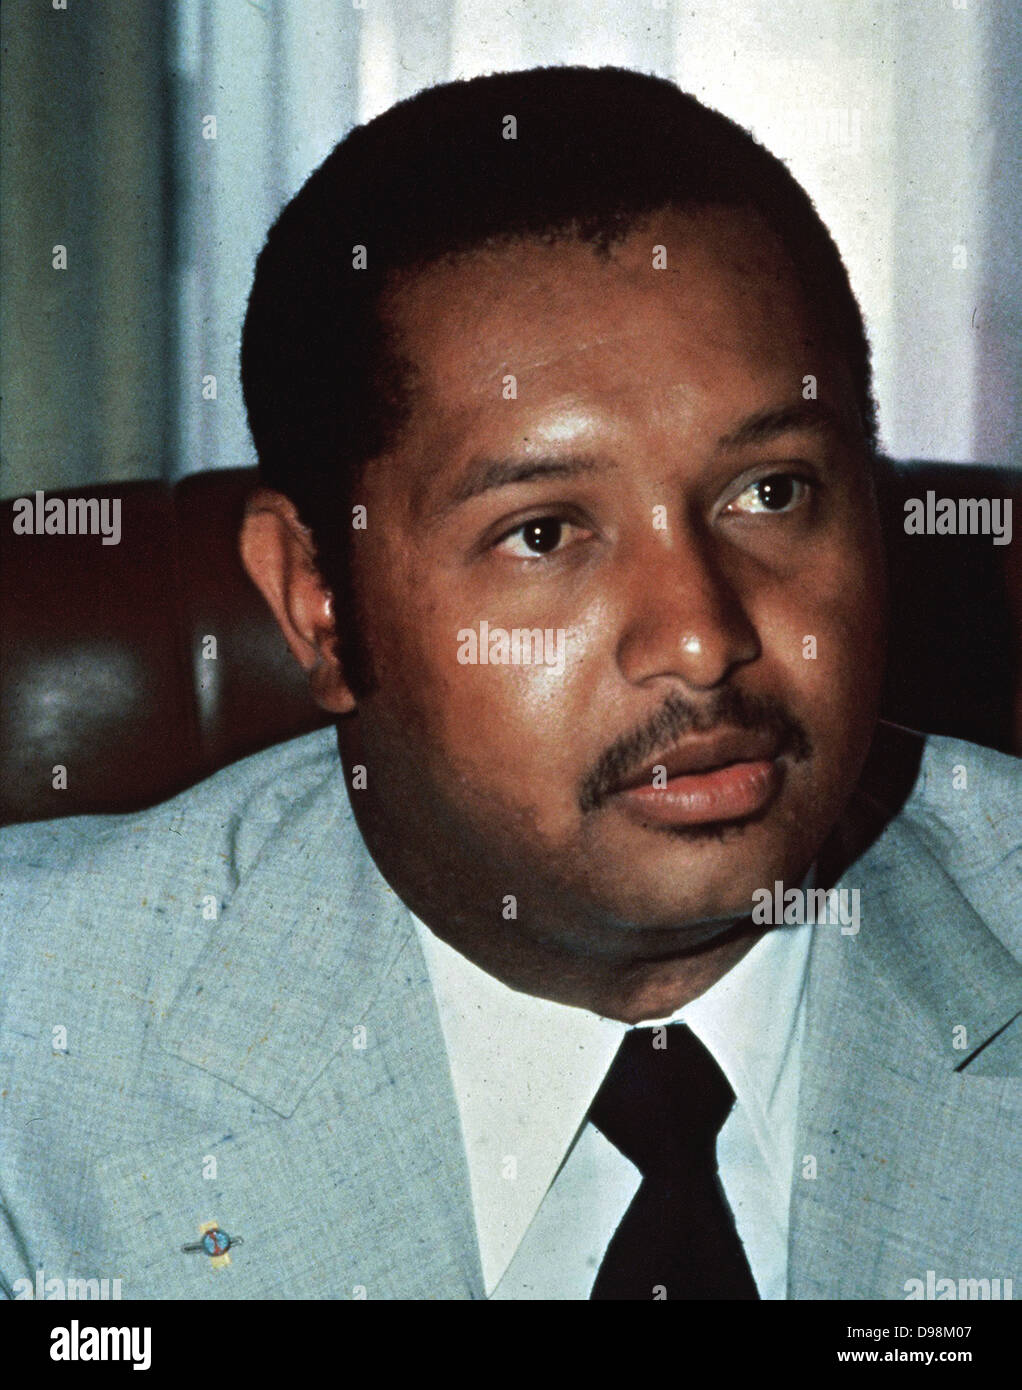 Jean-Claude Duvalier, auch "Baby Doc" oder "Baby Doc" (3. Juli 1951 geboren) war der Präsident von Haiti von 1971 bis zu seinem Sturz durch einen Volksaufstand im Jahre 1986 Stockfoto